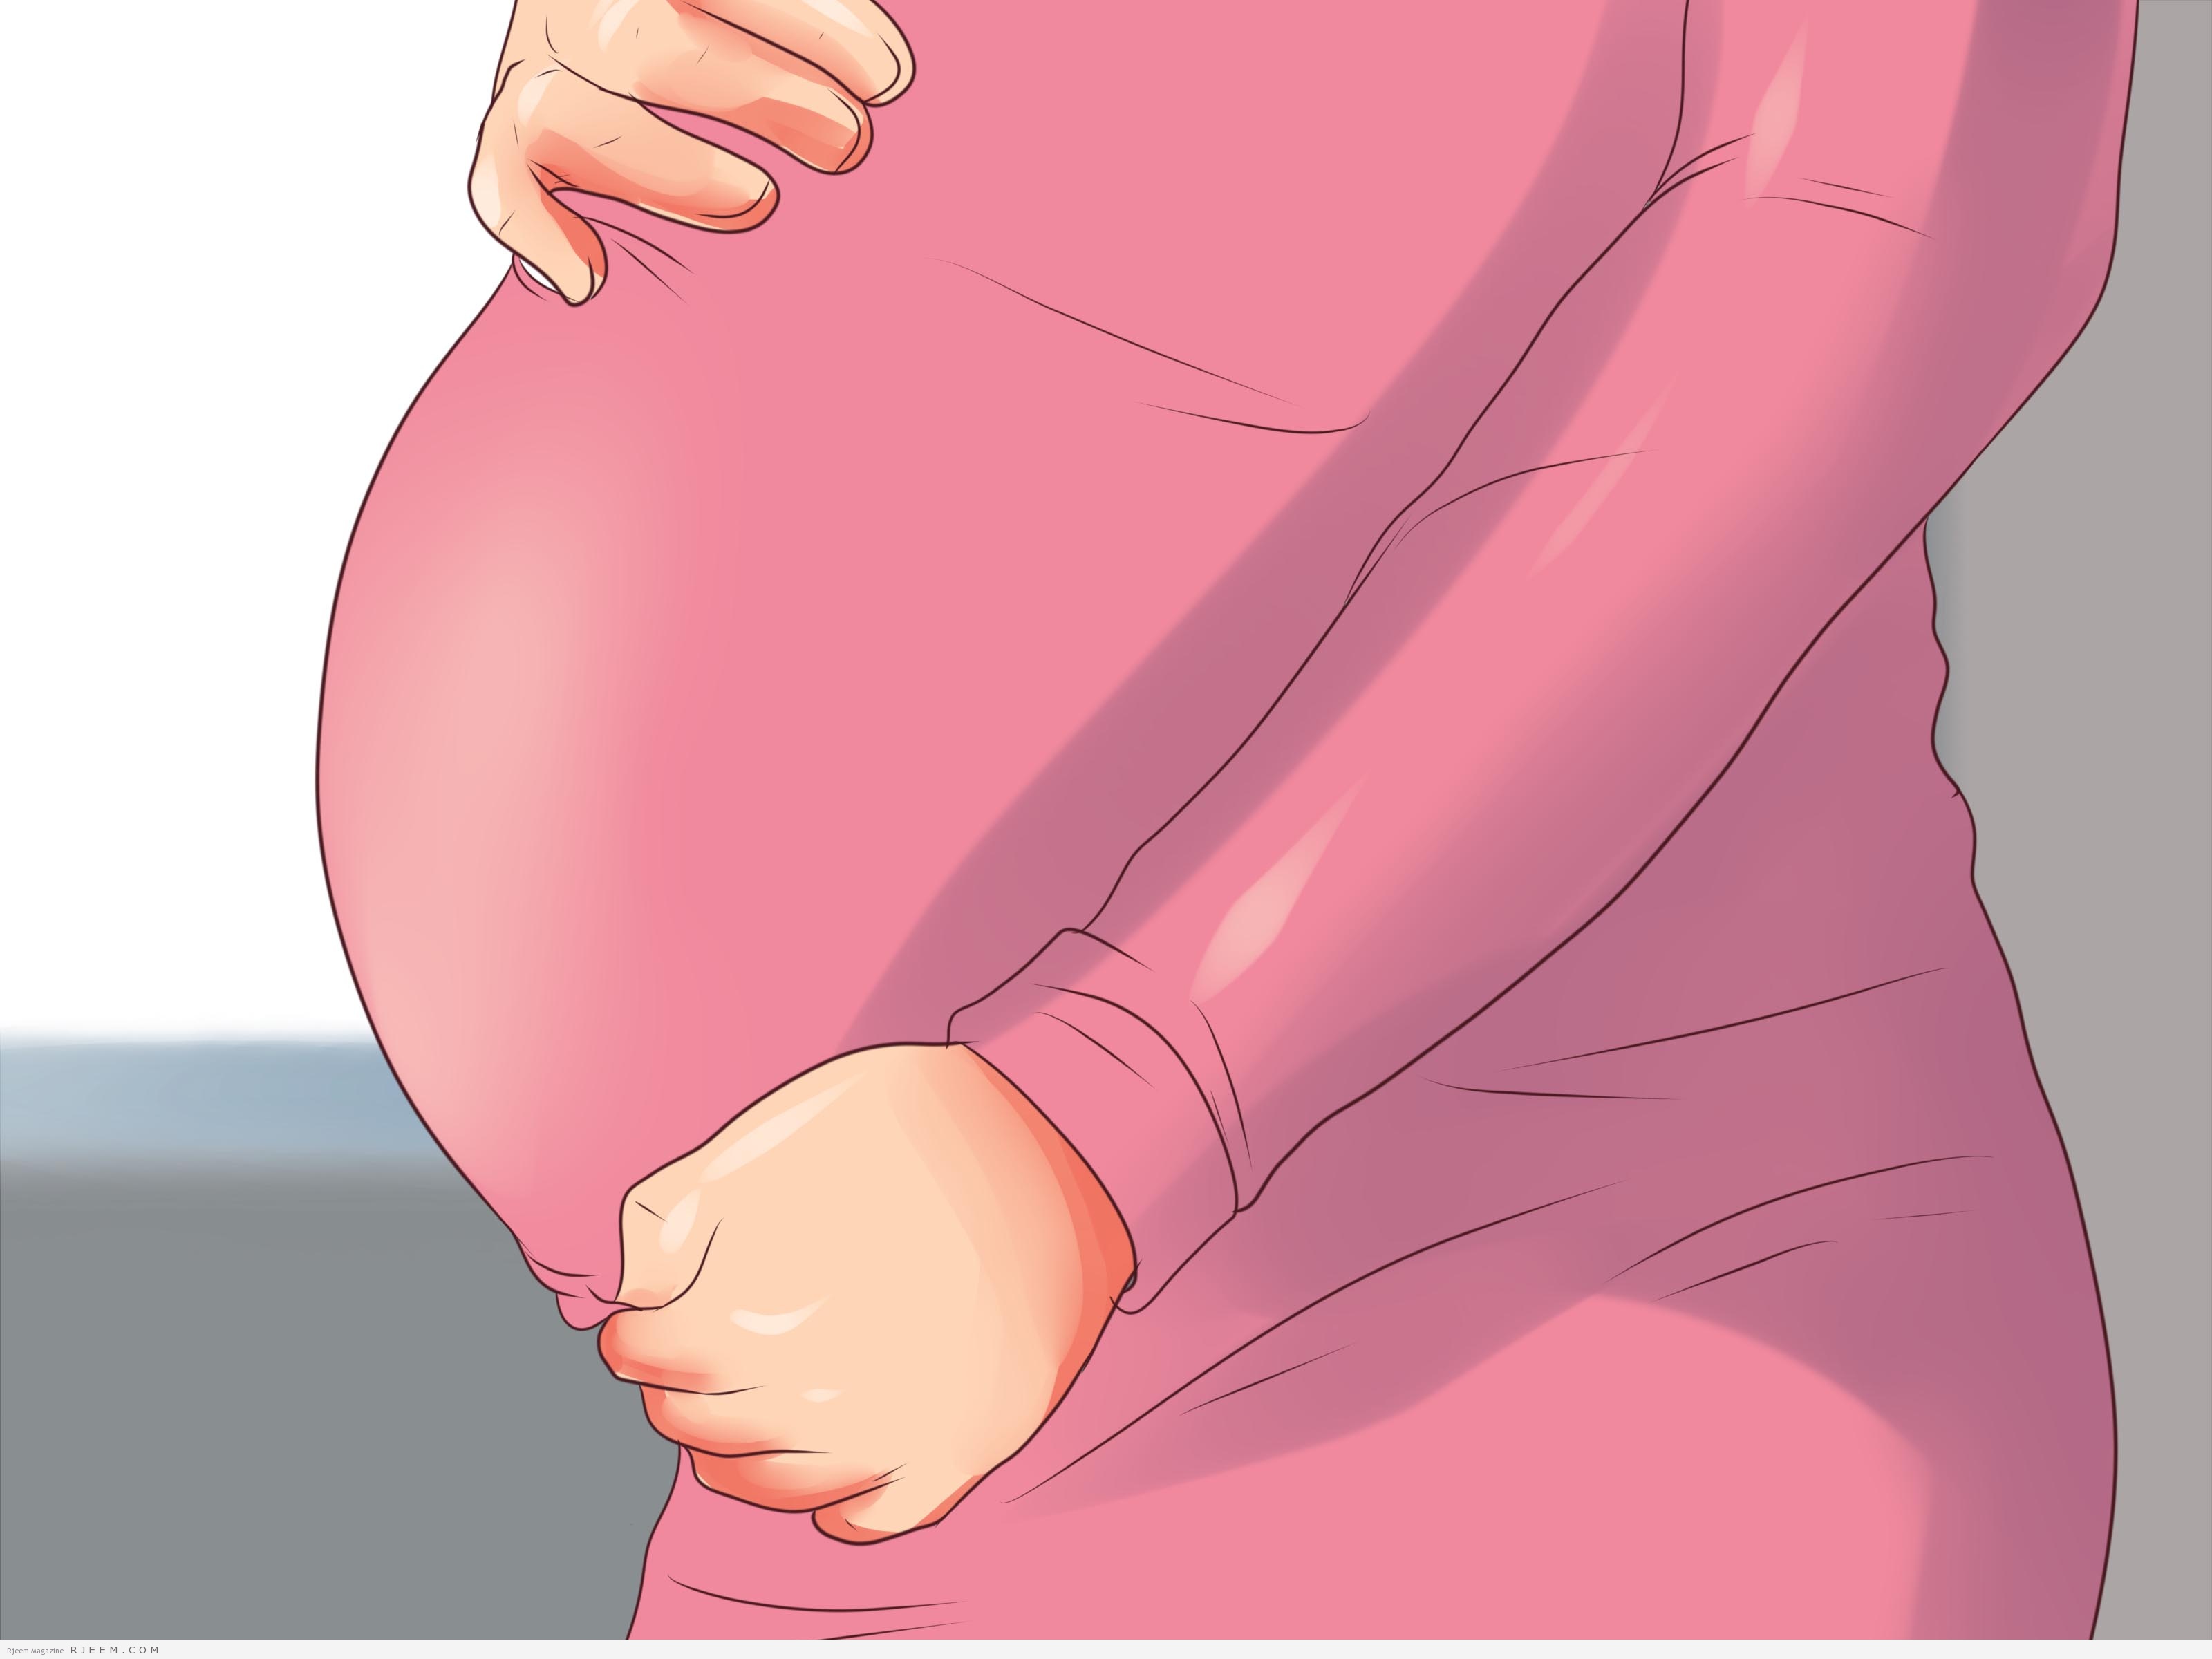 علاج الامساك عند الحامل اسباب وعلاج الامساك عند سيده الحامل افضل جديد